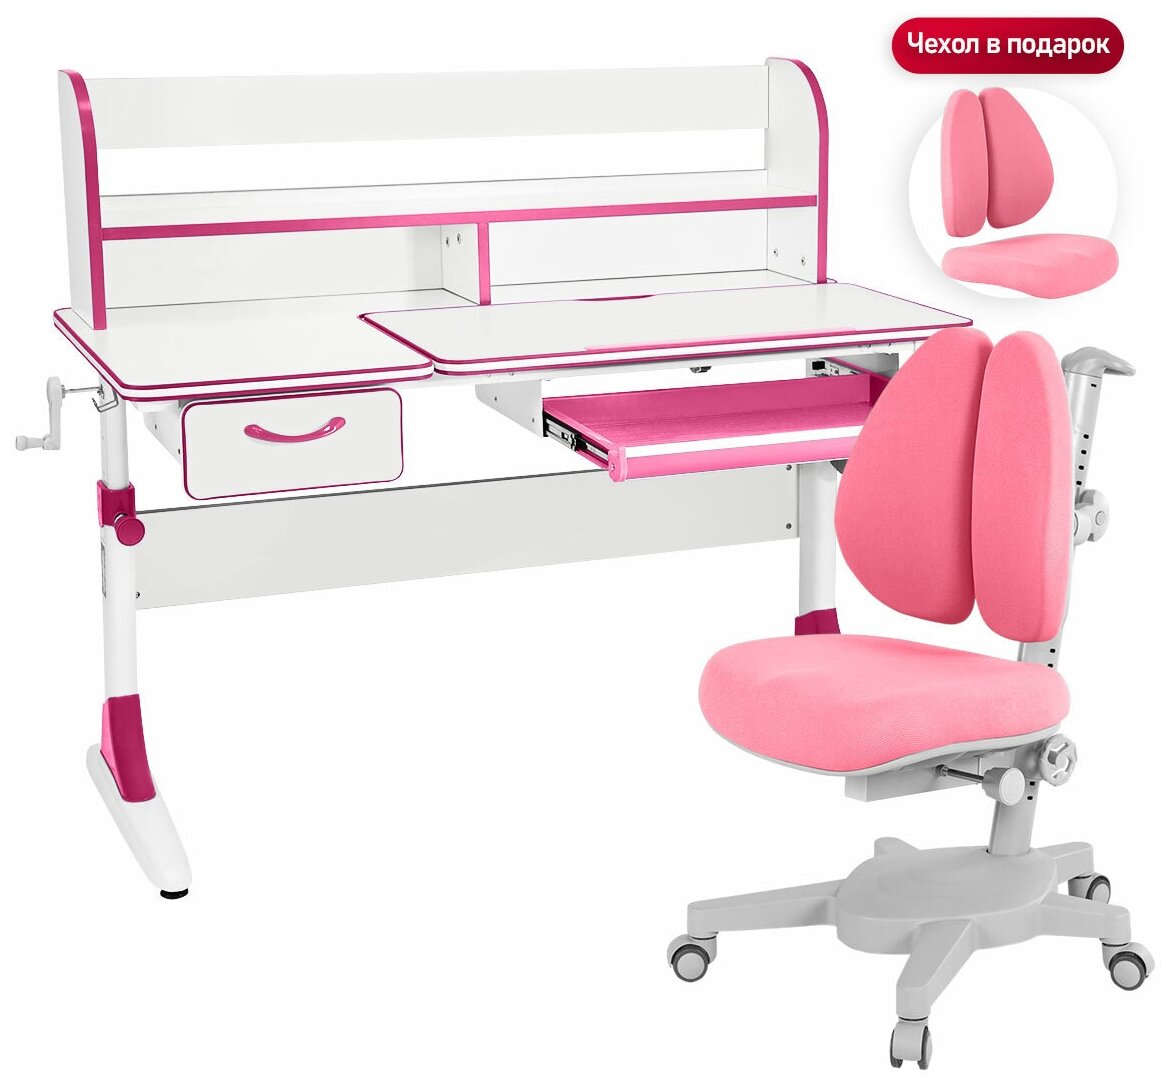 Комплект Anatomica Smart-60 Lux парта + кресло + надстройка + органайзер + ящик белый/розовый с розовым креслом Armata Duos - фотография № 1